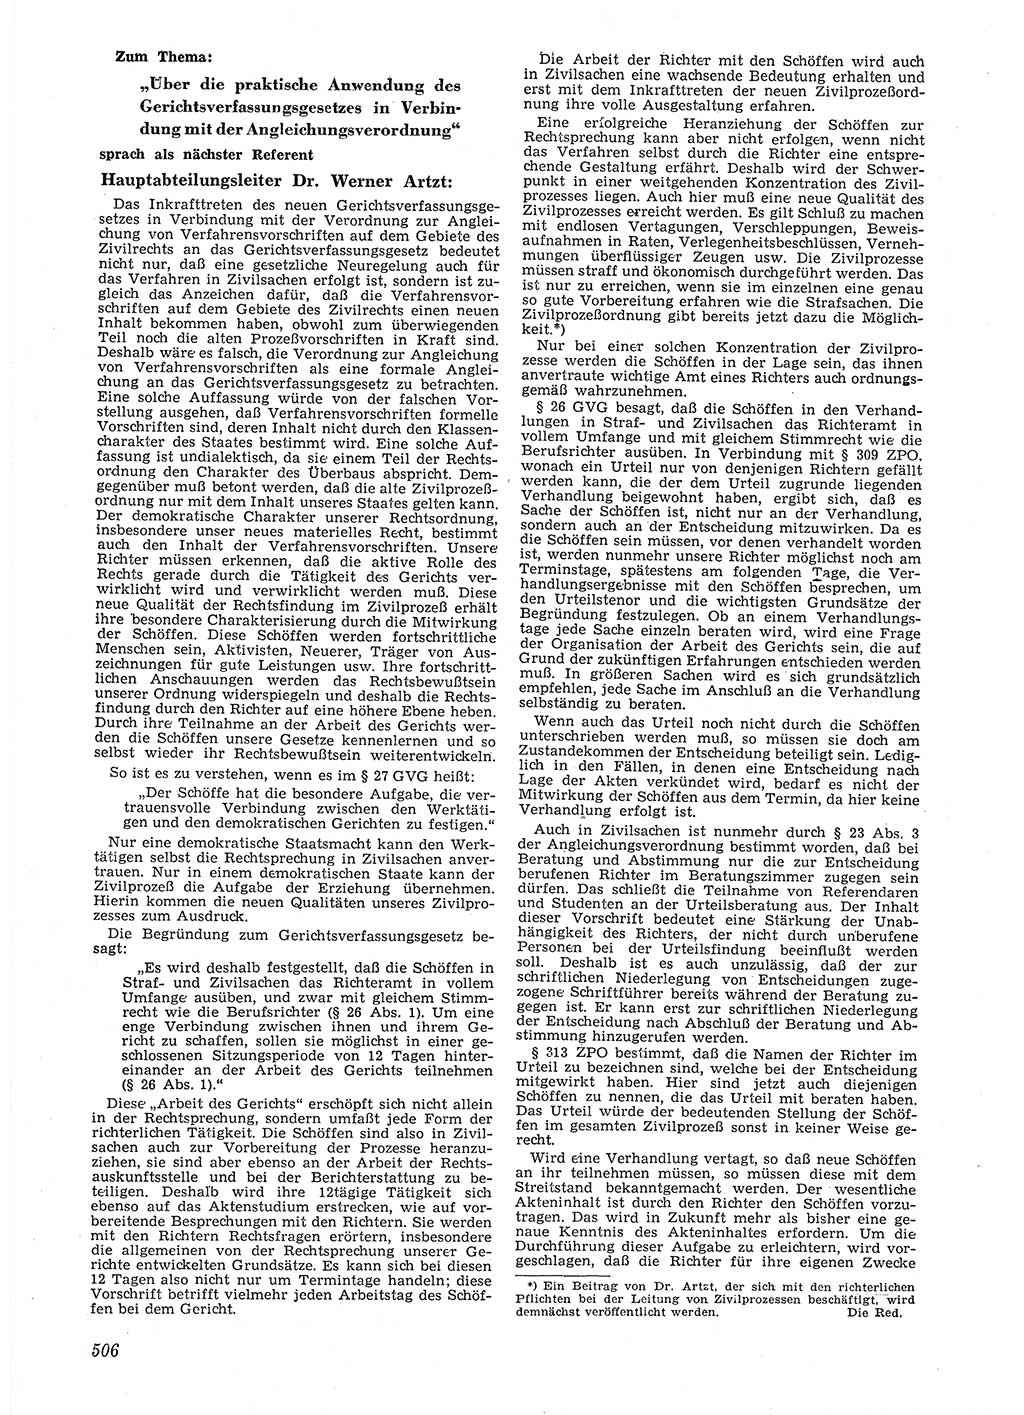 Neue Justiz (NJ), Zeitschrift für Recht und Rechtswissenschaft [Deutsche Demokratische Republik (DDR)], 6. Jahrgang 1952, Seite 506 (NJ DDR 1952, S. 506)